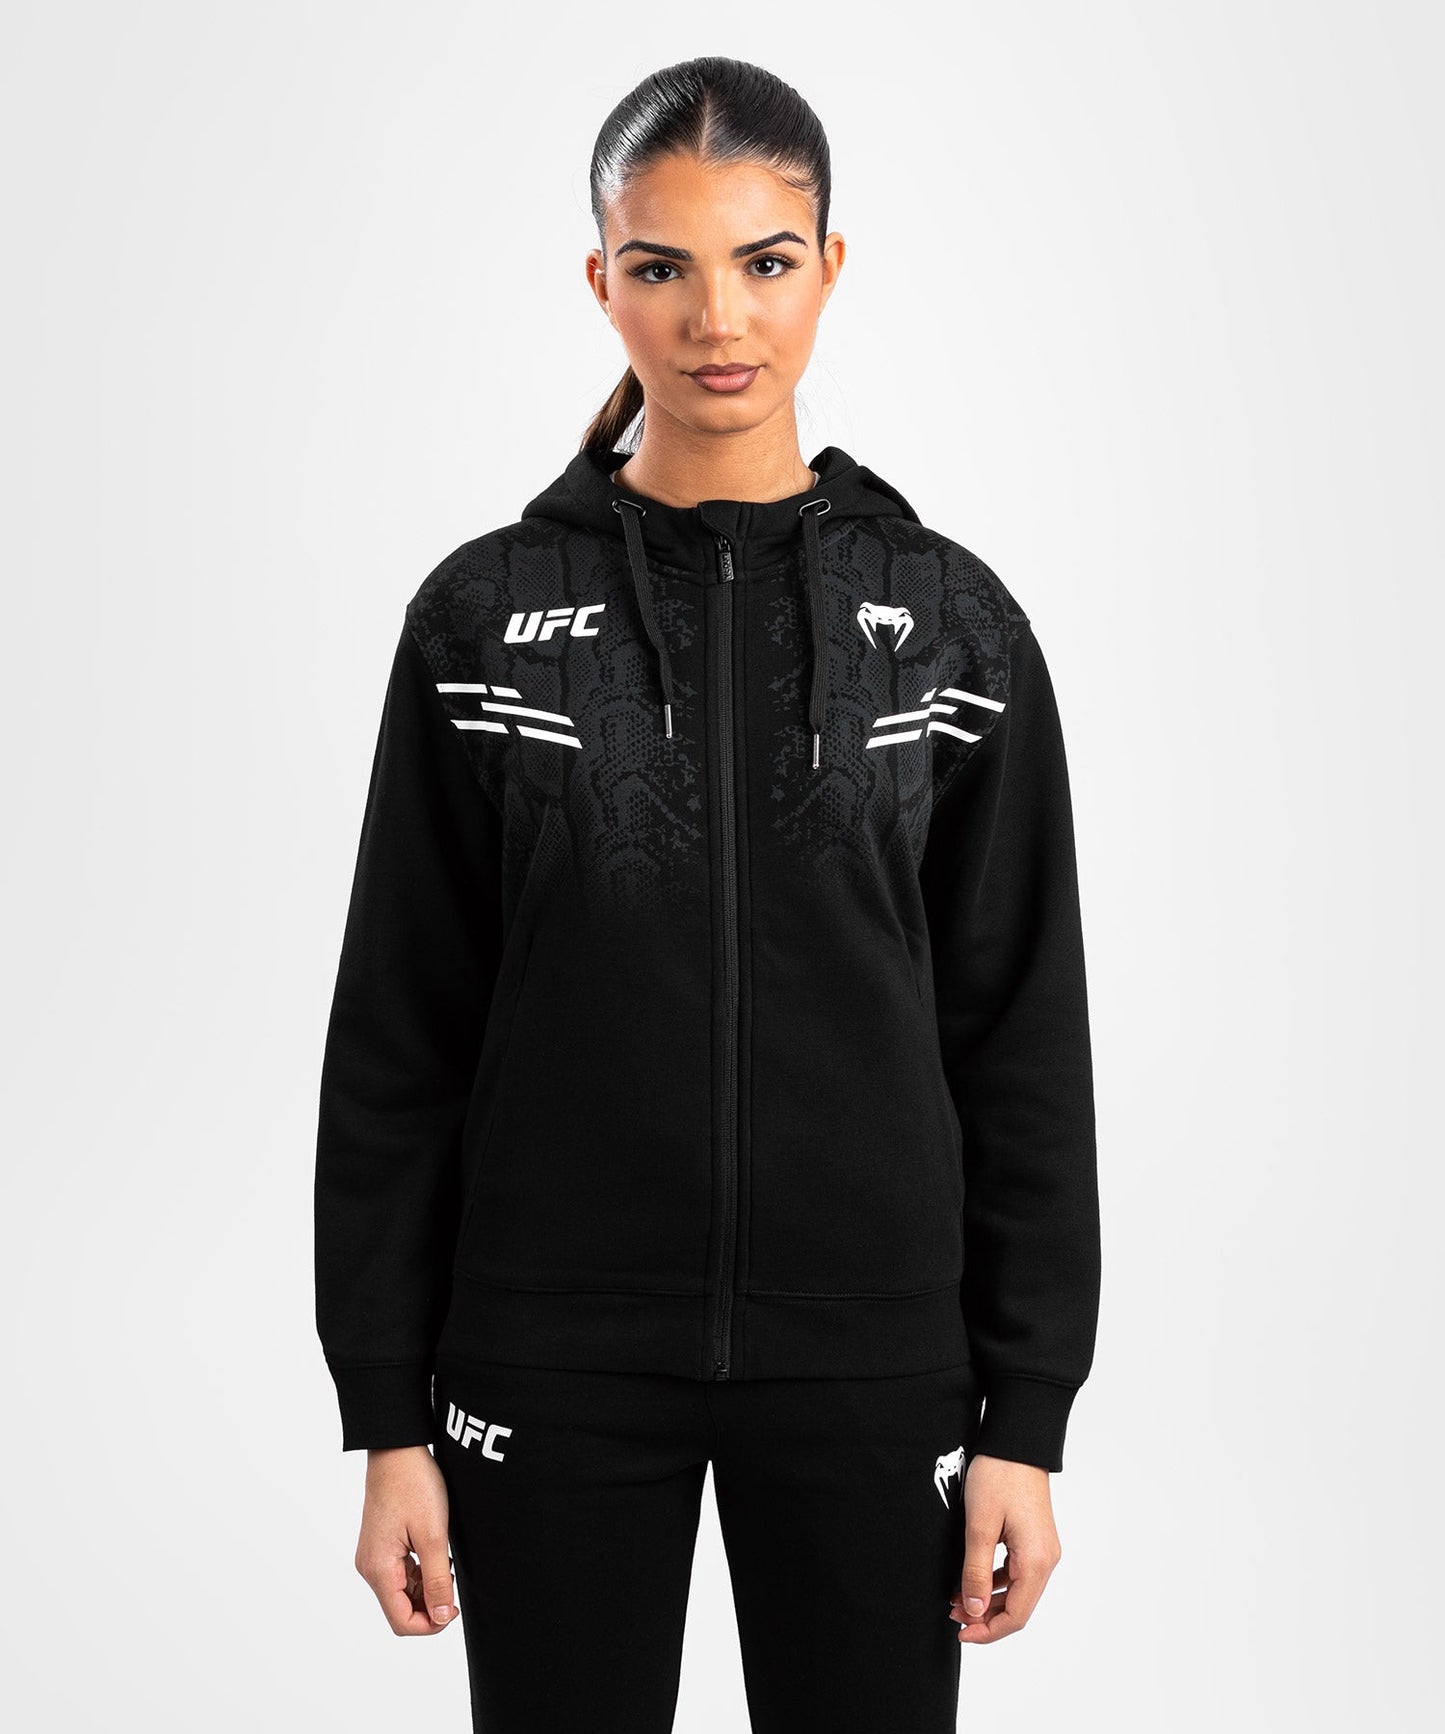 UFC Adrenaline by Venum Replica Zip Hoodie für Frauen - Schwarz